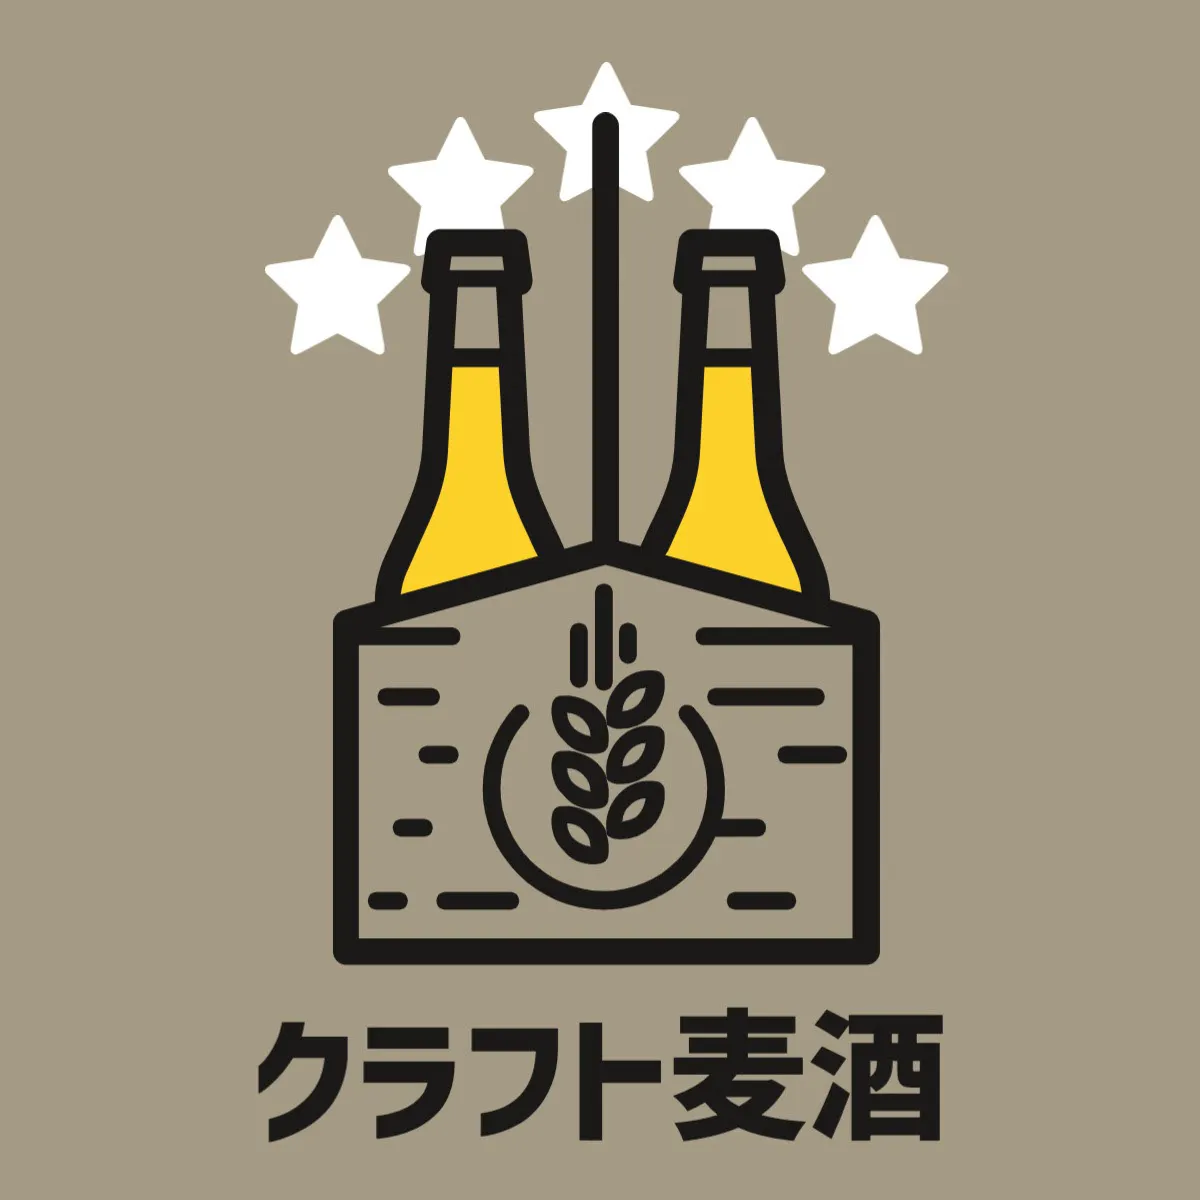 Craft beer sticker logo